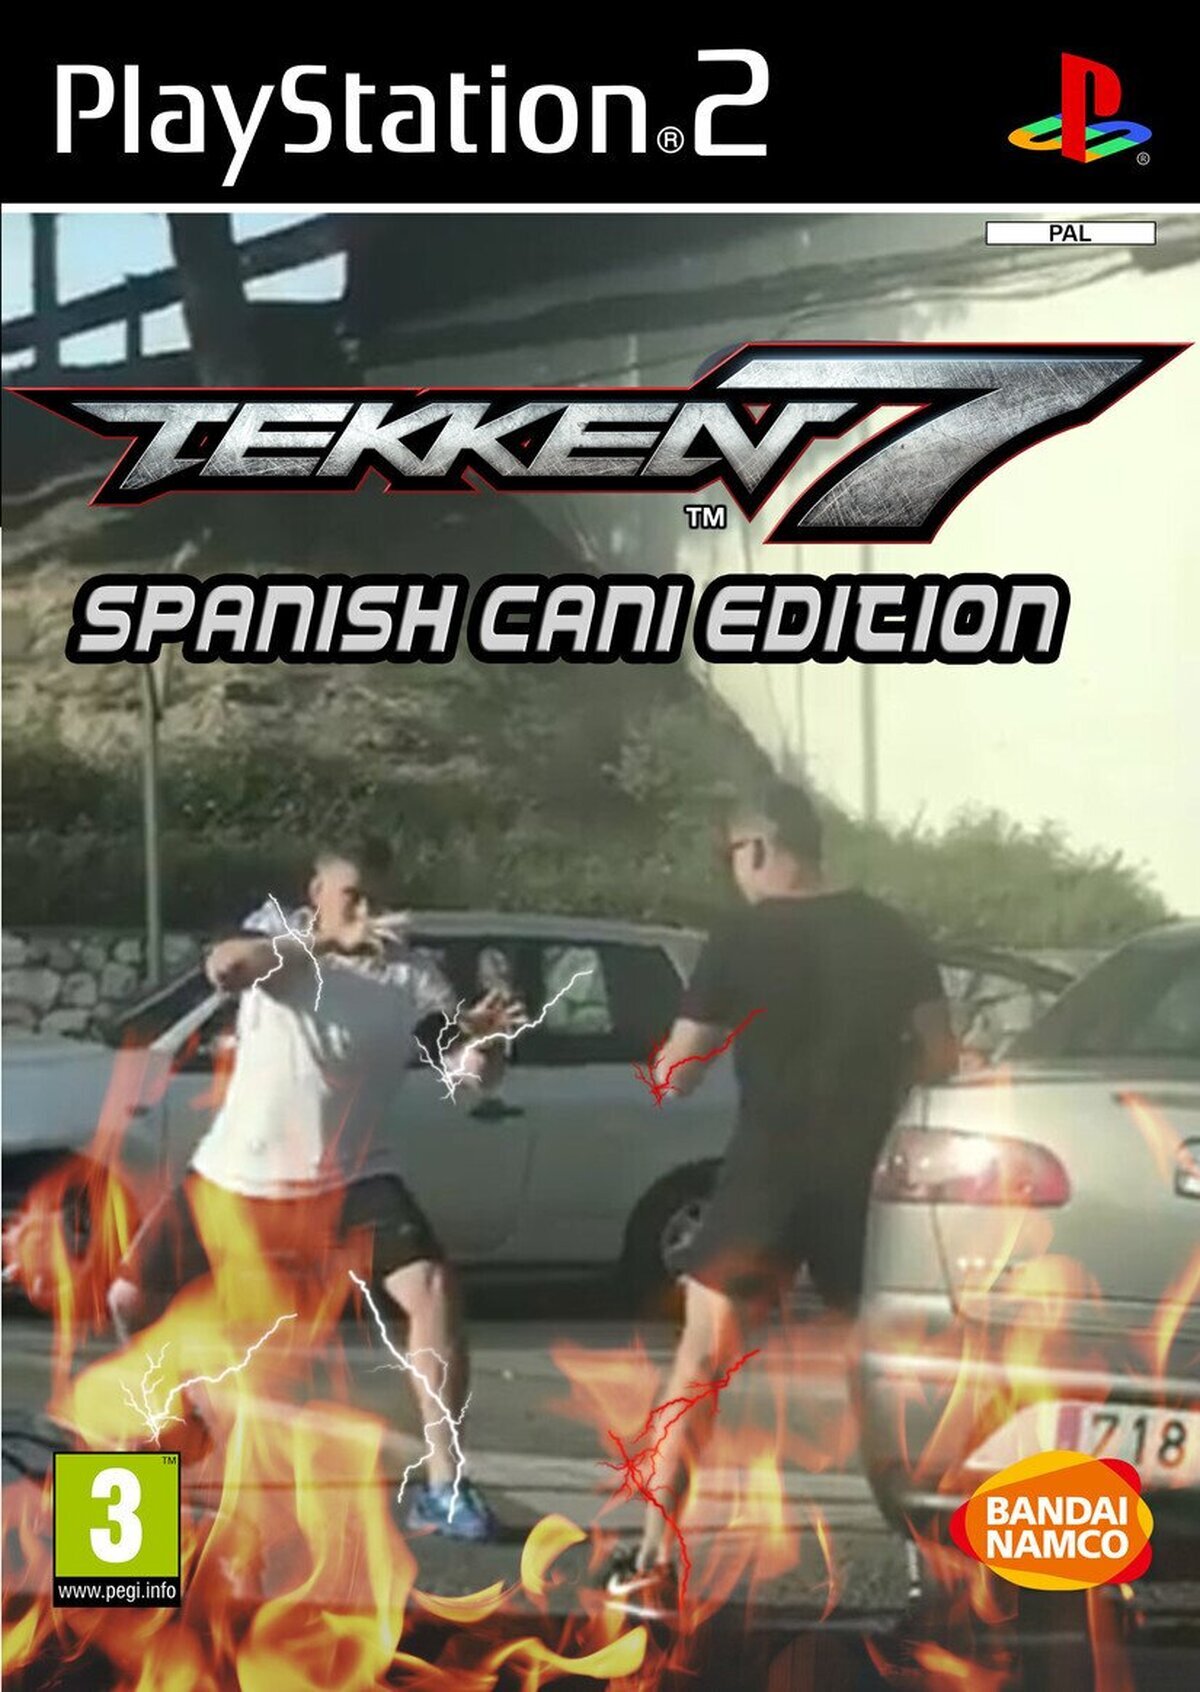 En España también tenemos nuestro propio Tekken